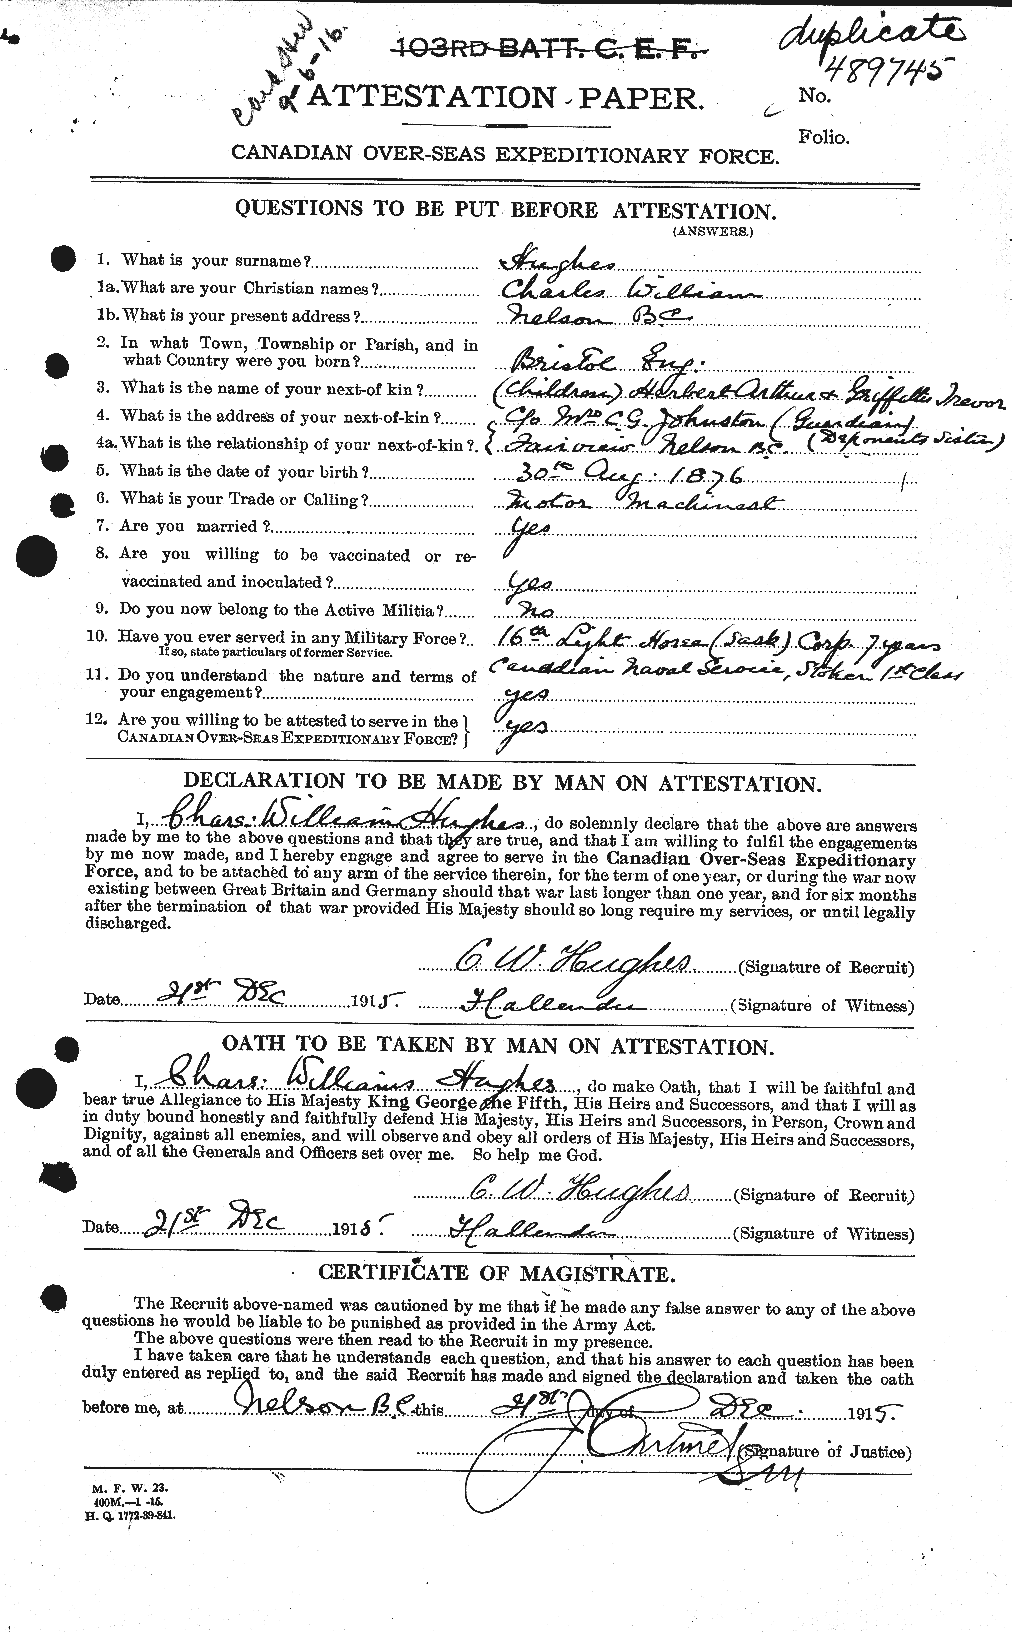 Dossiers du Personnel de la Première Guerre mondiale - CEC 402618a